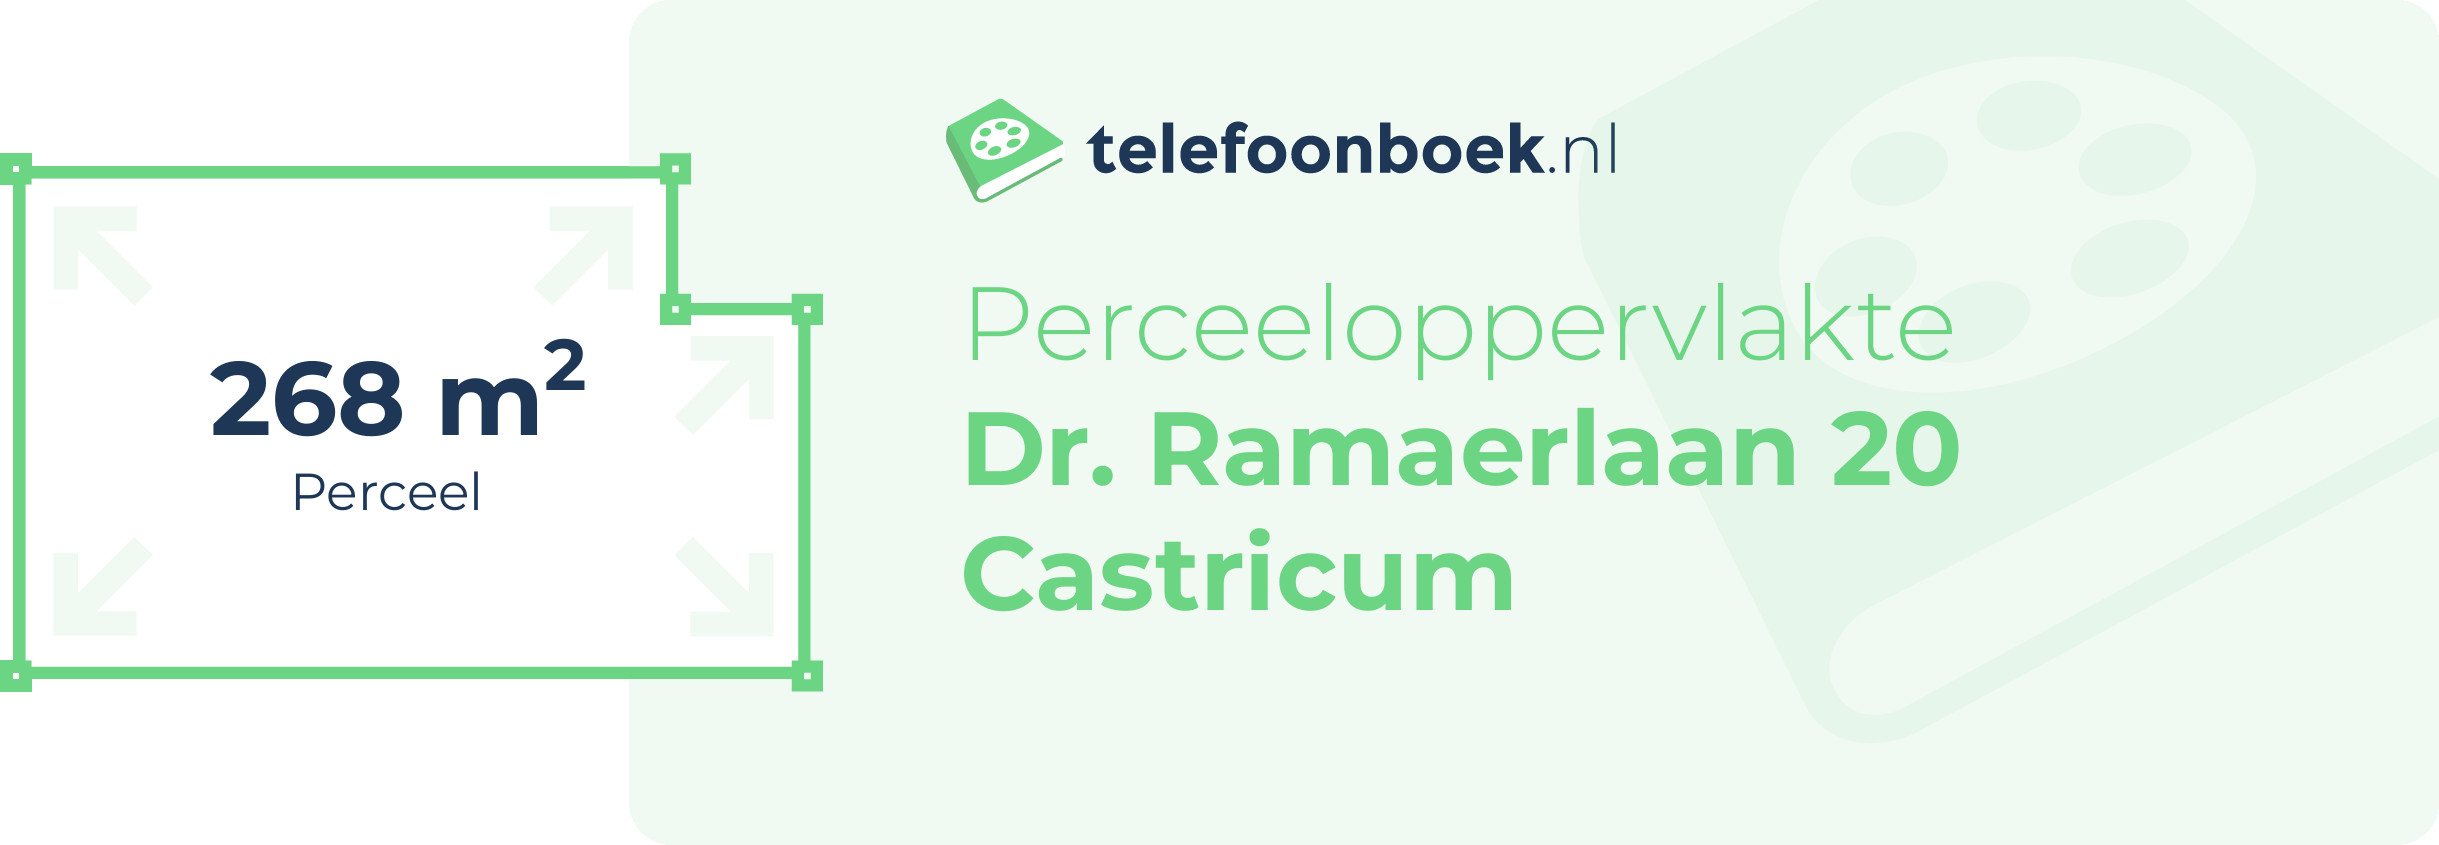 Perceeloppervlakte Dr. Ramaerlaan 20 Castricum